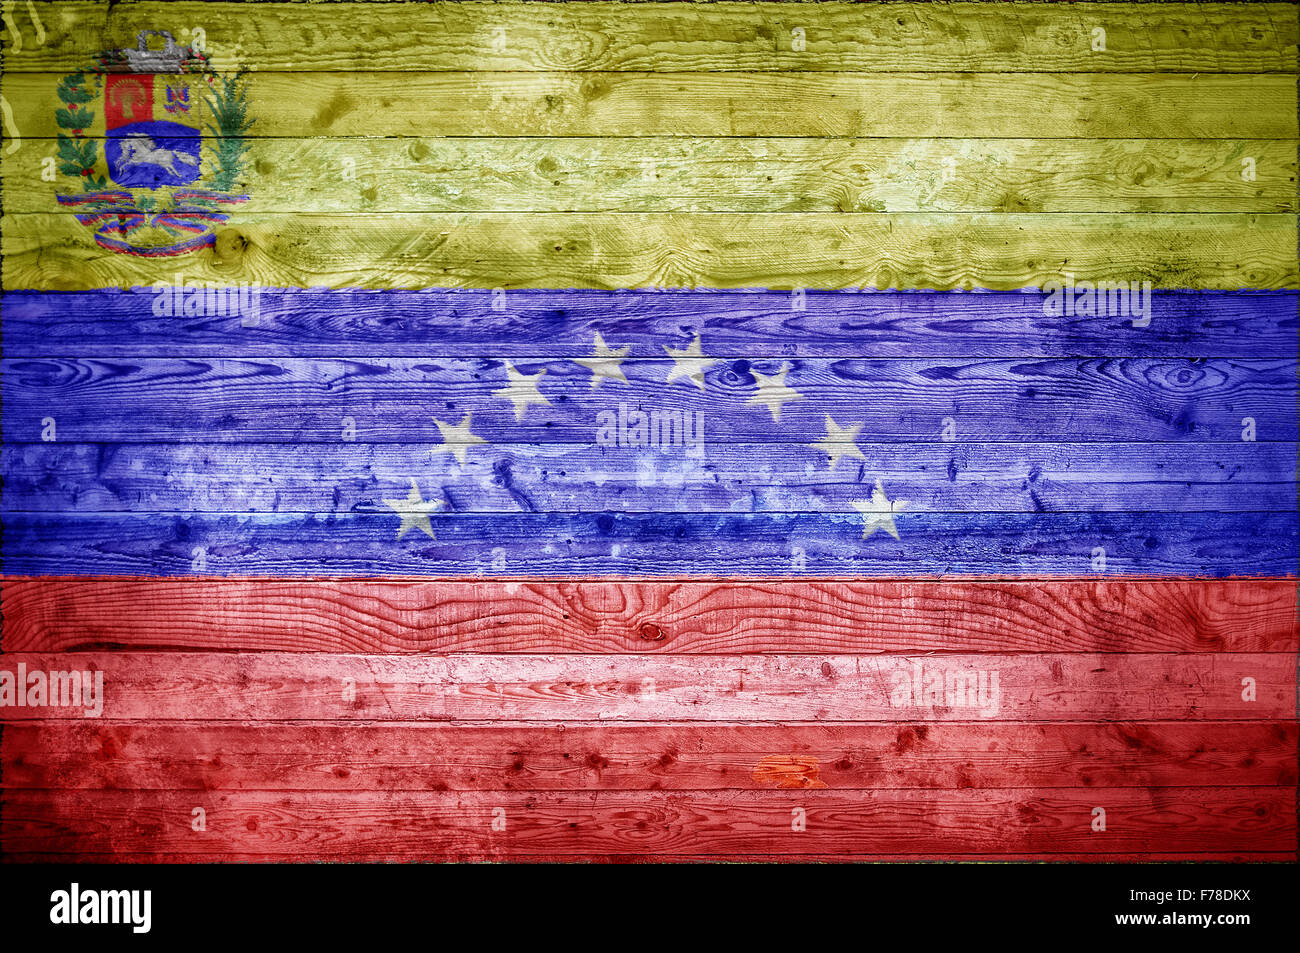 Un vignetted imagen de fondo de la bandera de Venezuela en tablas de madera de una pared o en el suelo. Foto de stock